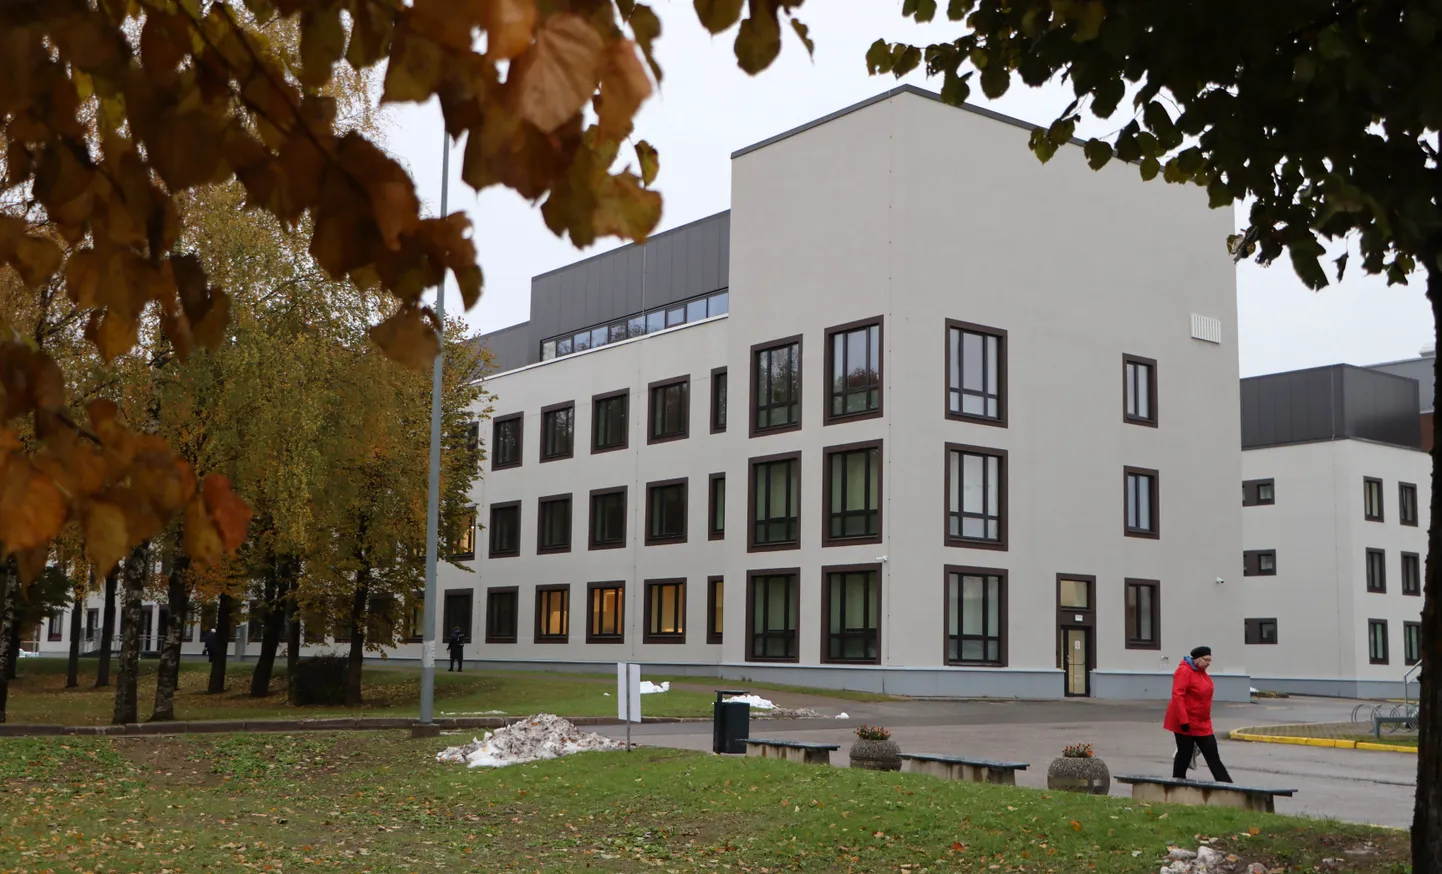 Старейший корпус Ида-Вируской центральной больницы в Ахтмеской части города Кохтла-Ярве получил новые интерьер и экстерьер.